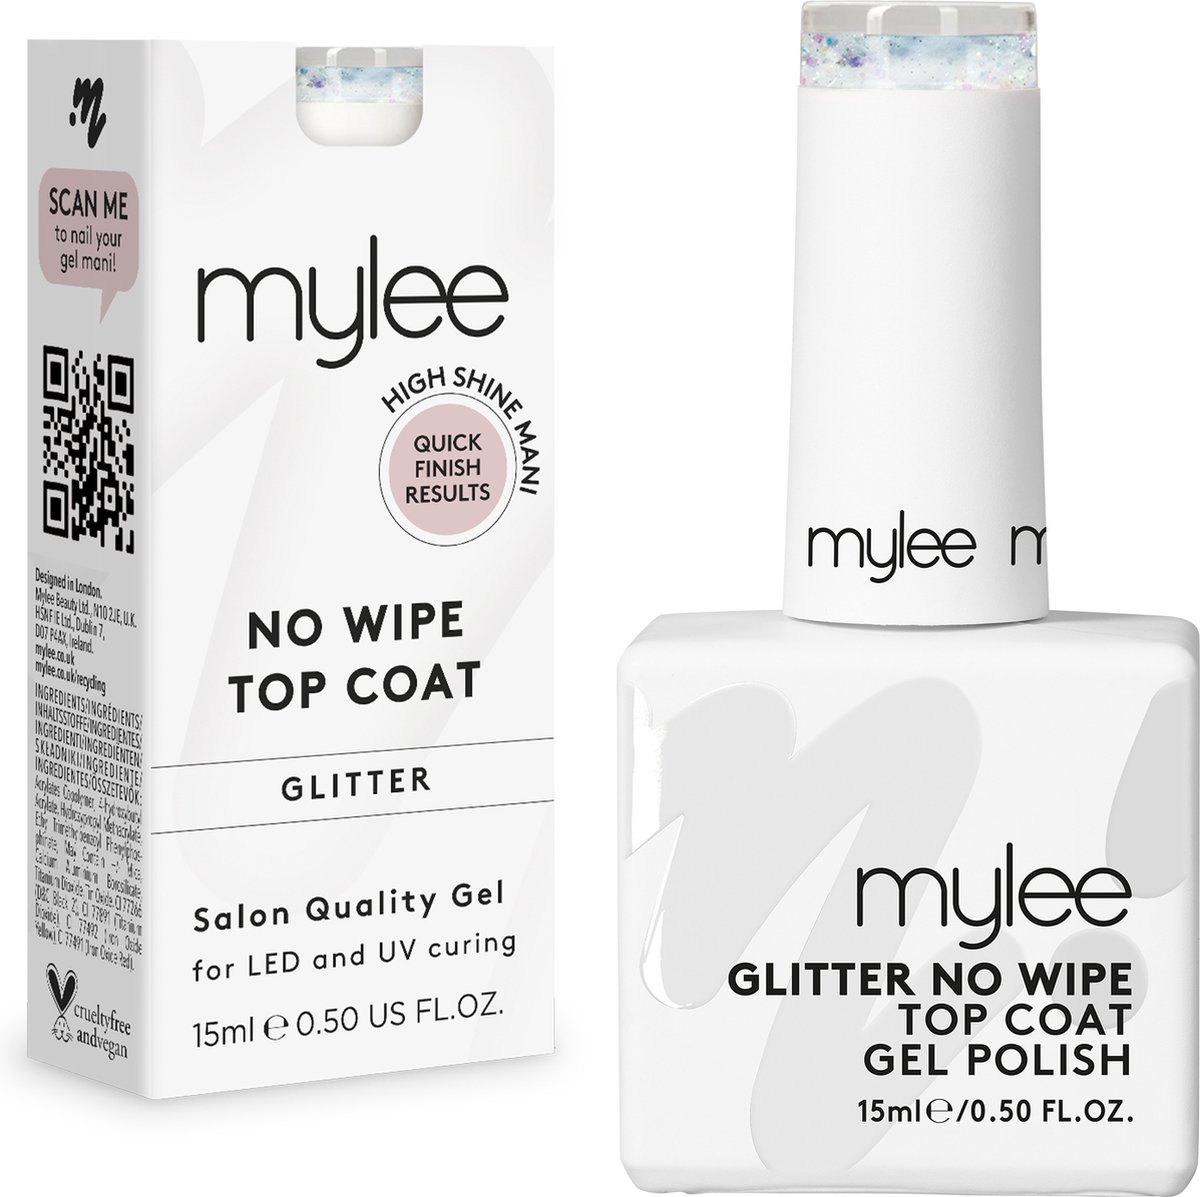 Mylee Glitter No-Wipe Gel-Nagellak Top Coat 15ml UV/LED Nail Art Manicure Pedicure voor professioneel & thuisgebruik - Langdurig en gemakkelijk aan te brengen